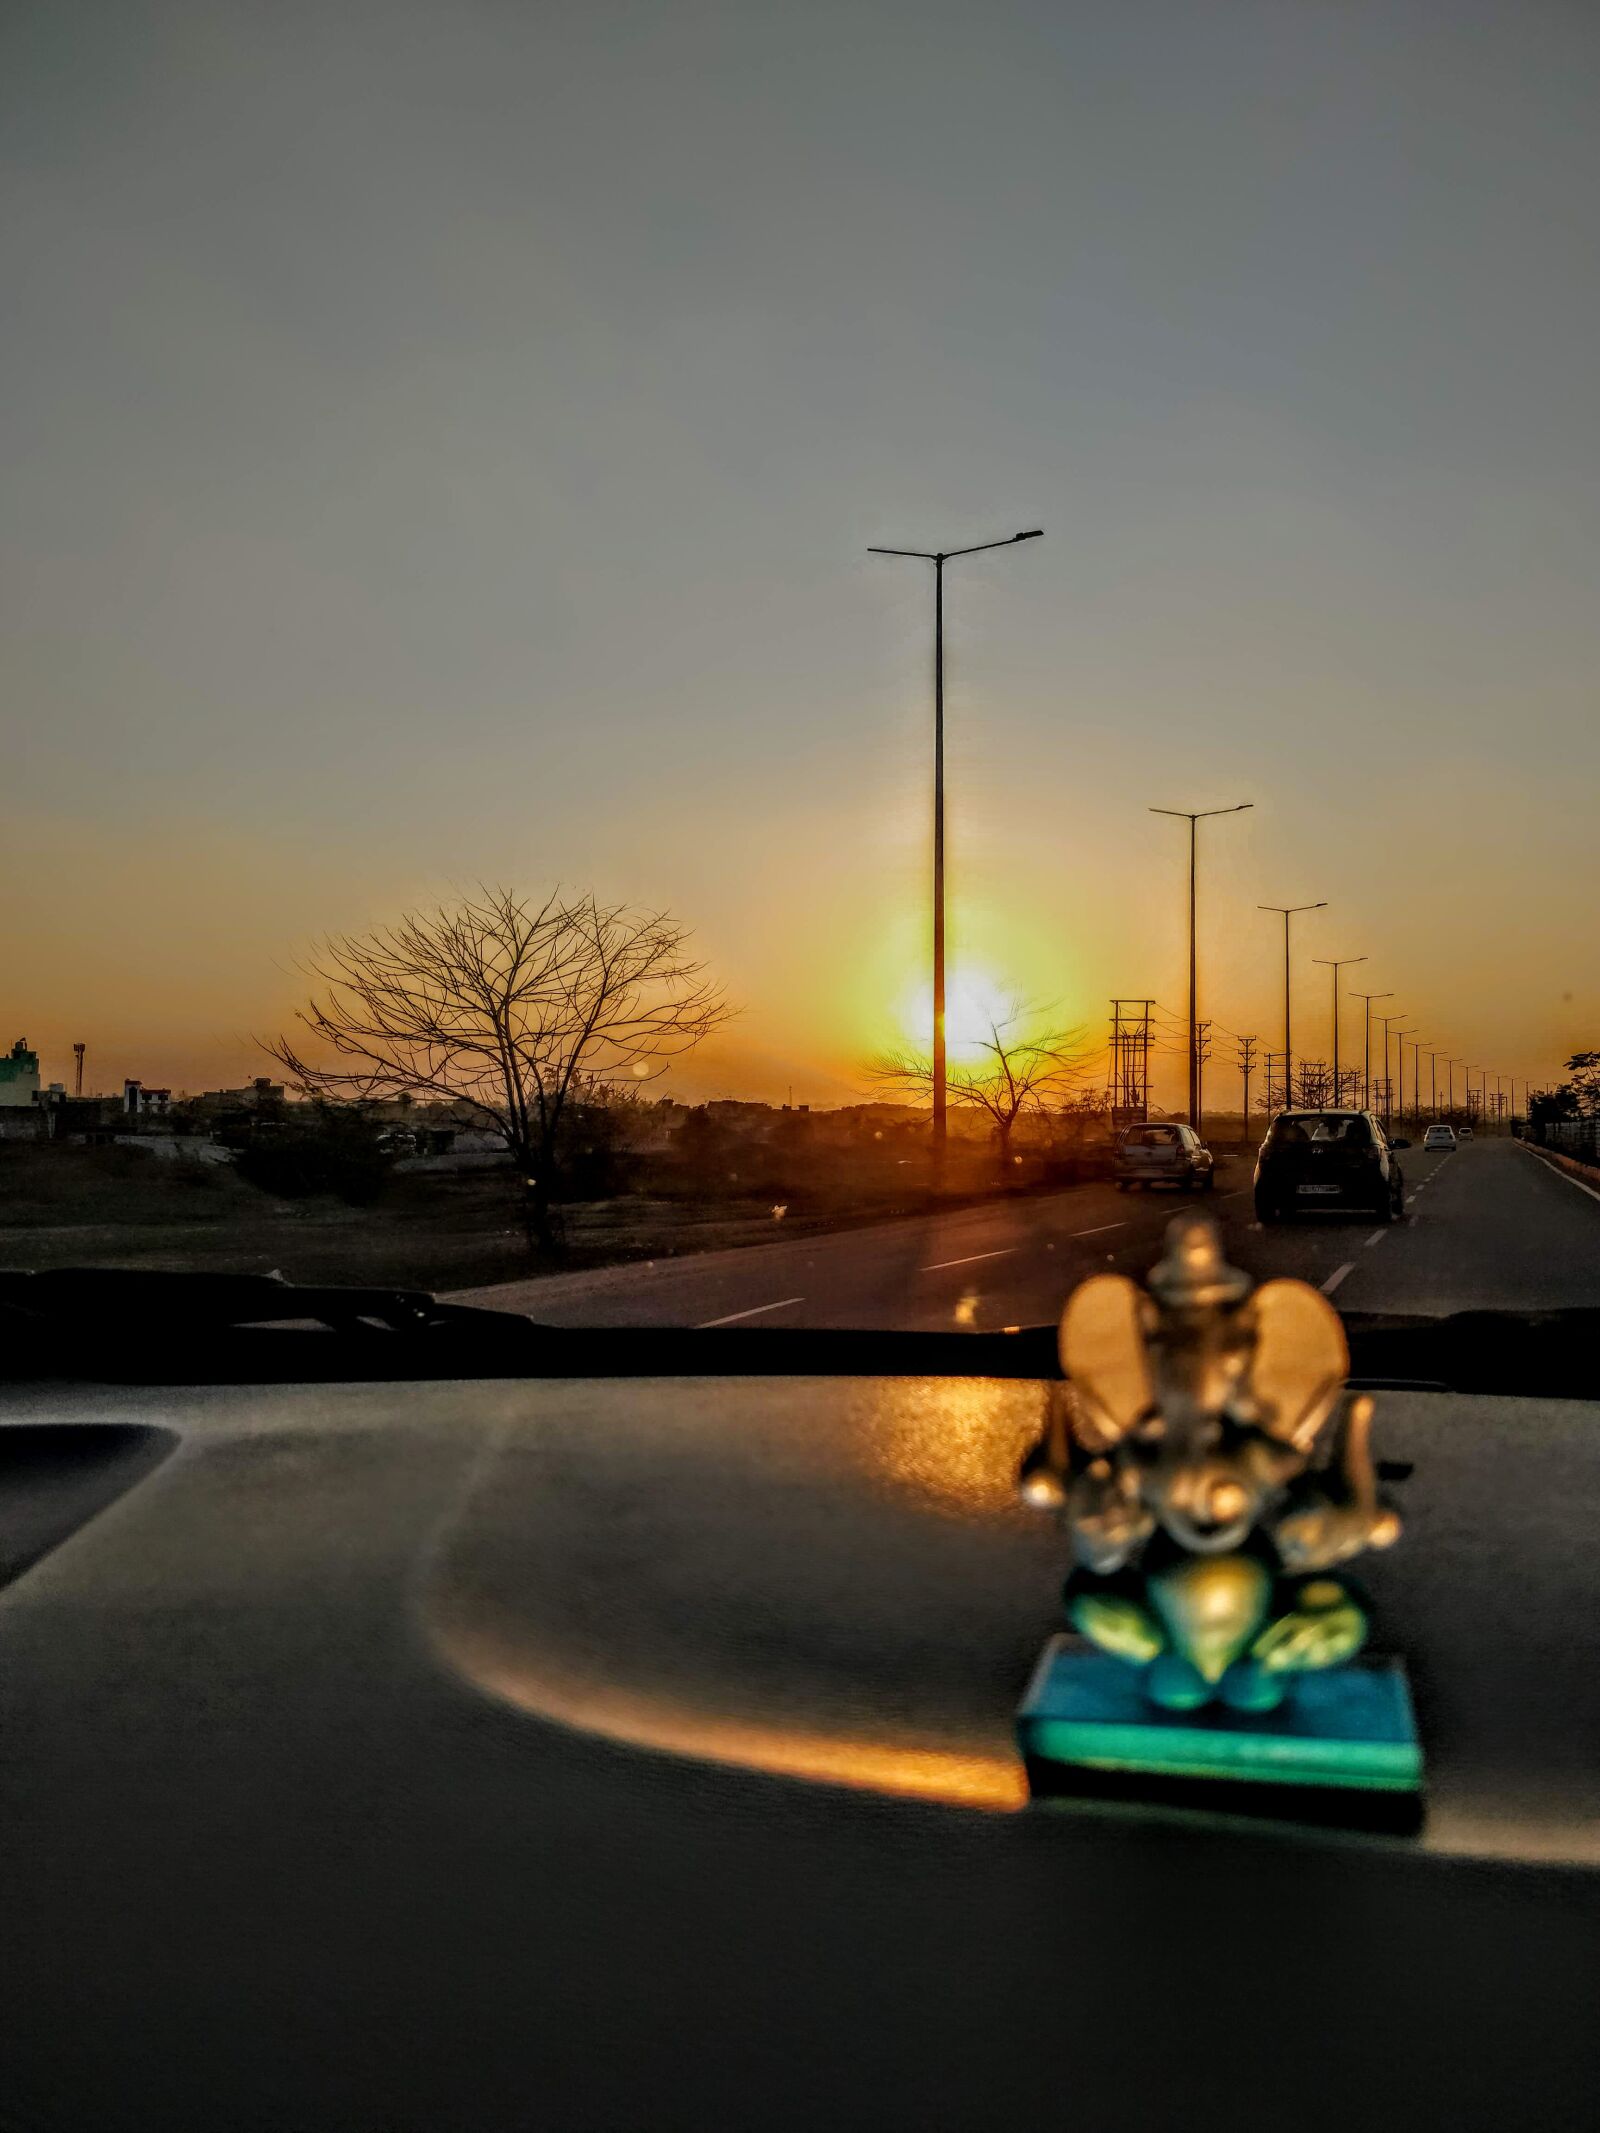 OnePlus 5 sample photo. Sunset, india, landscape photography